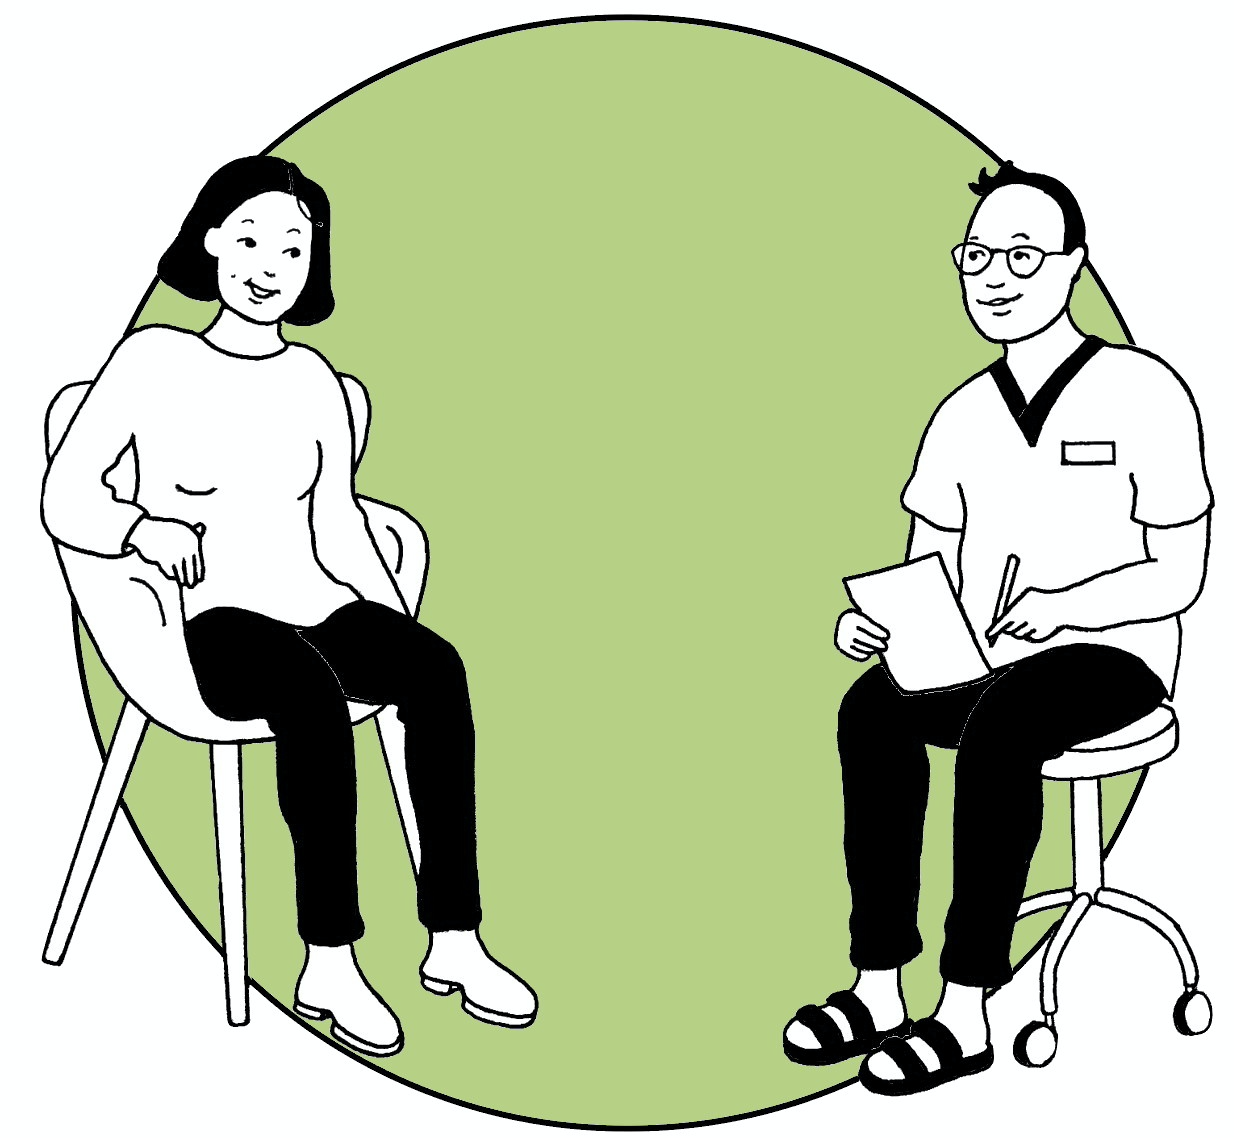 Tecknad bild med en kvinna som samtalar med en manlig vårdgivare. Han för anteckningar på ett papper. Teckningen ramas in av en grön cirkelformad bottenplatta. Illustration Majsan Sundell.